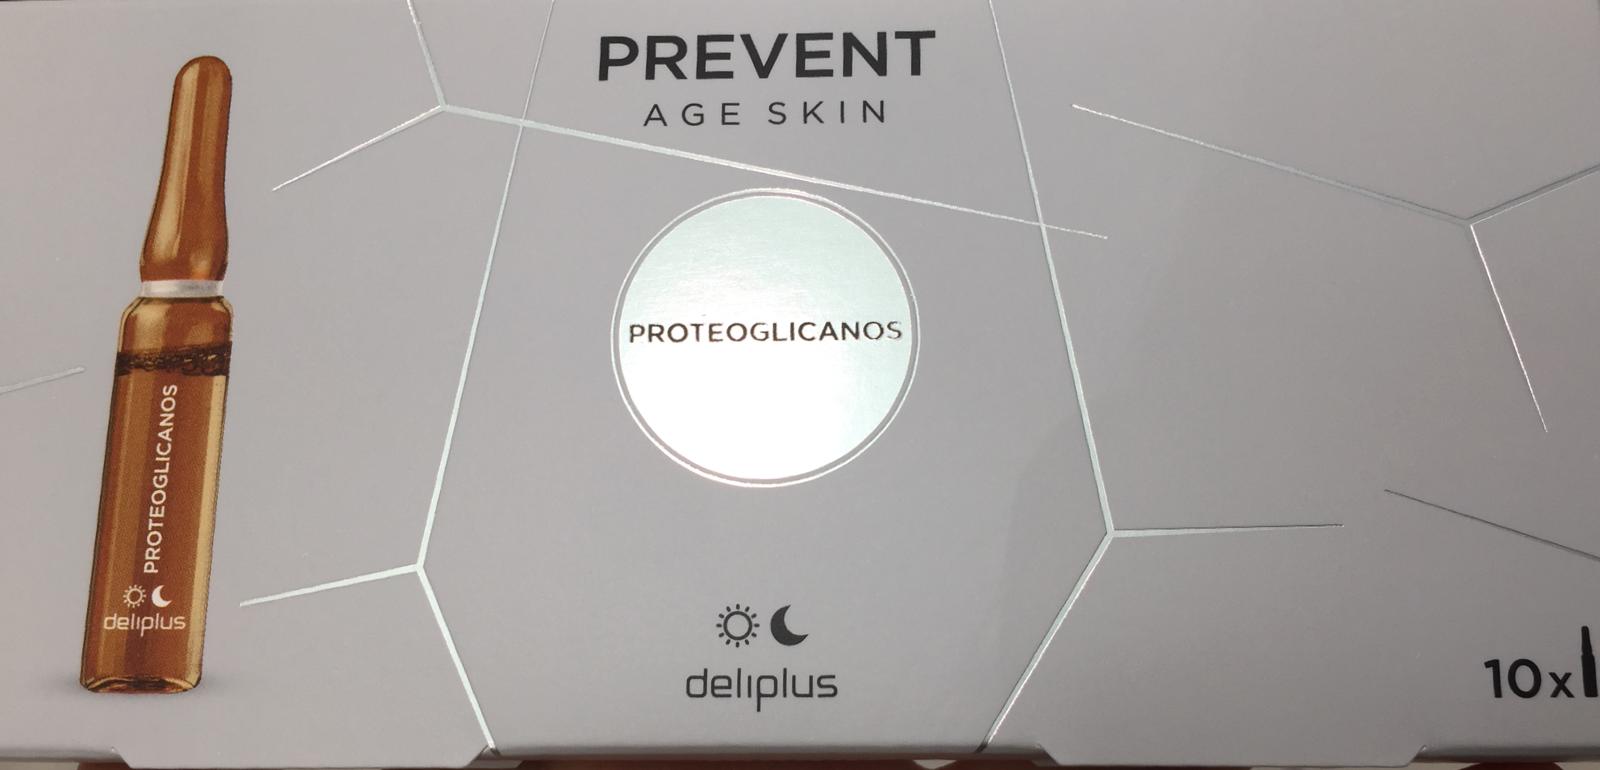 Prevent age skin